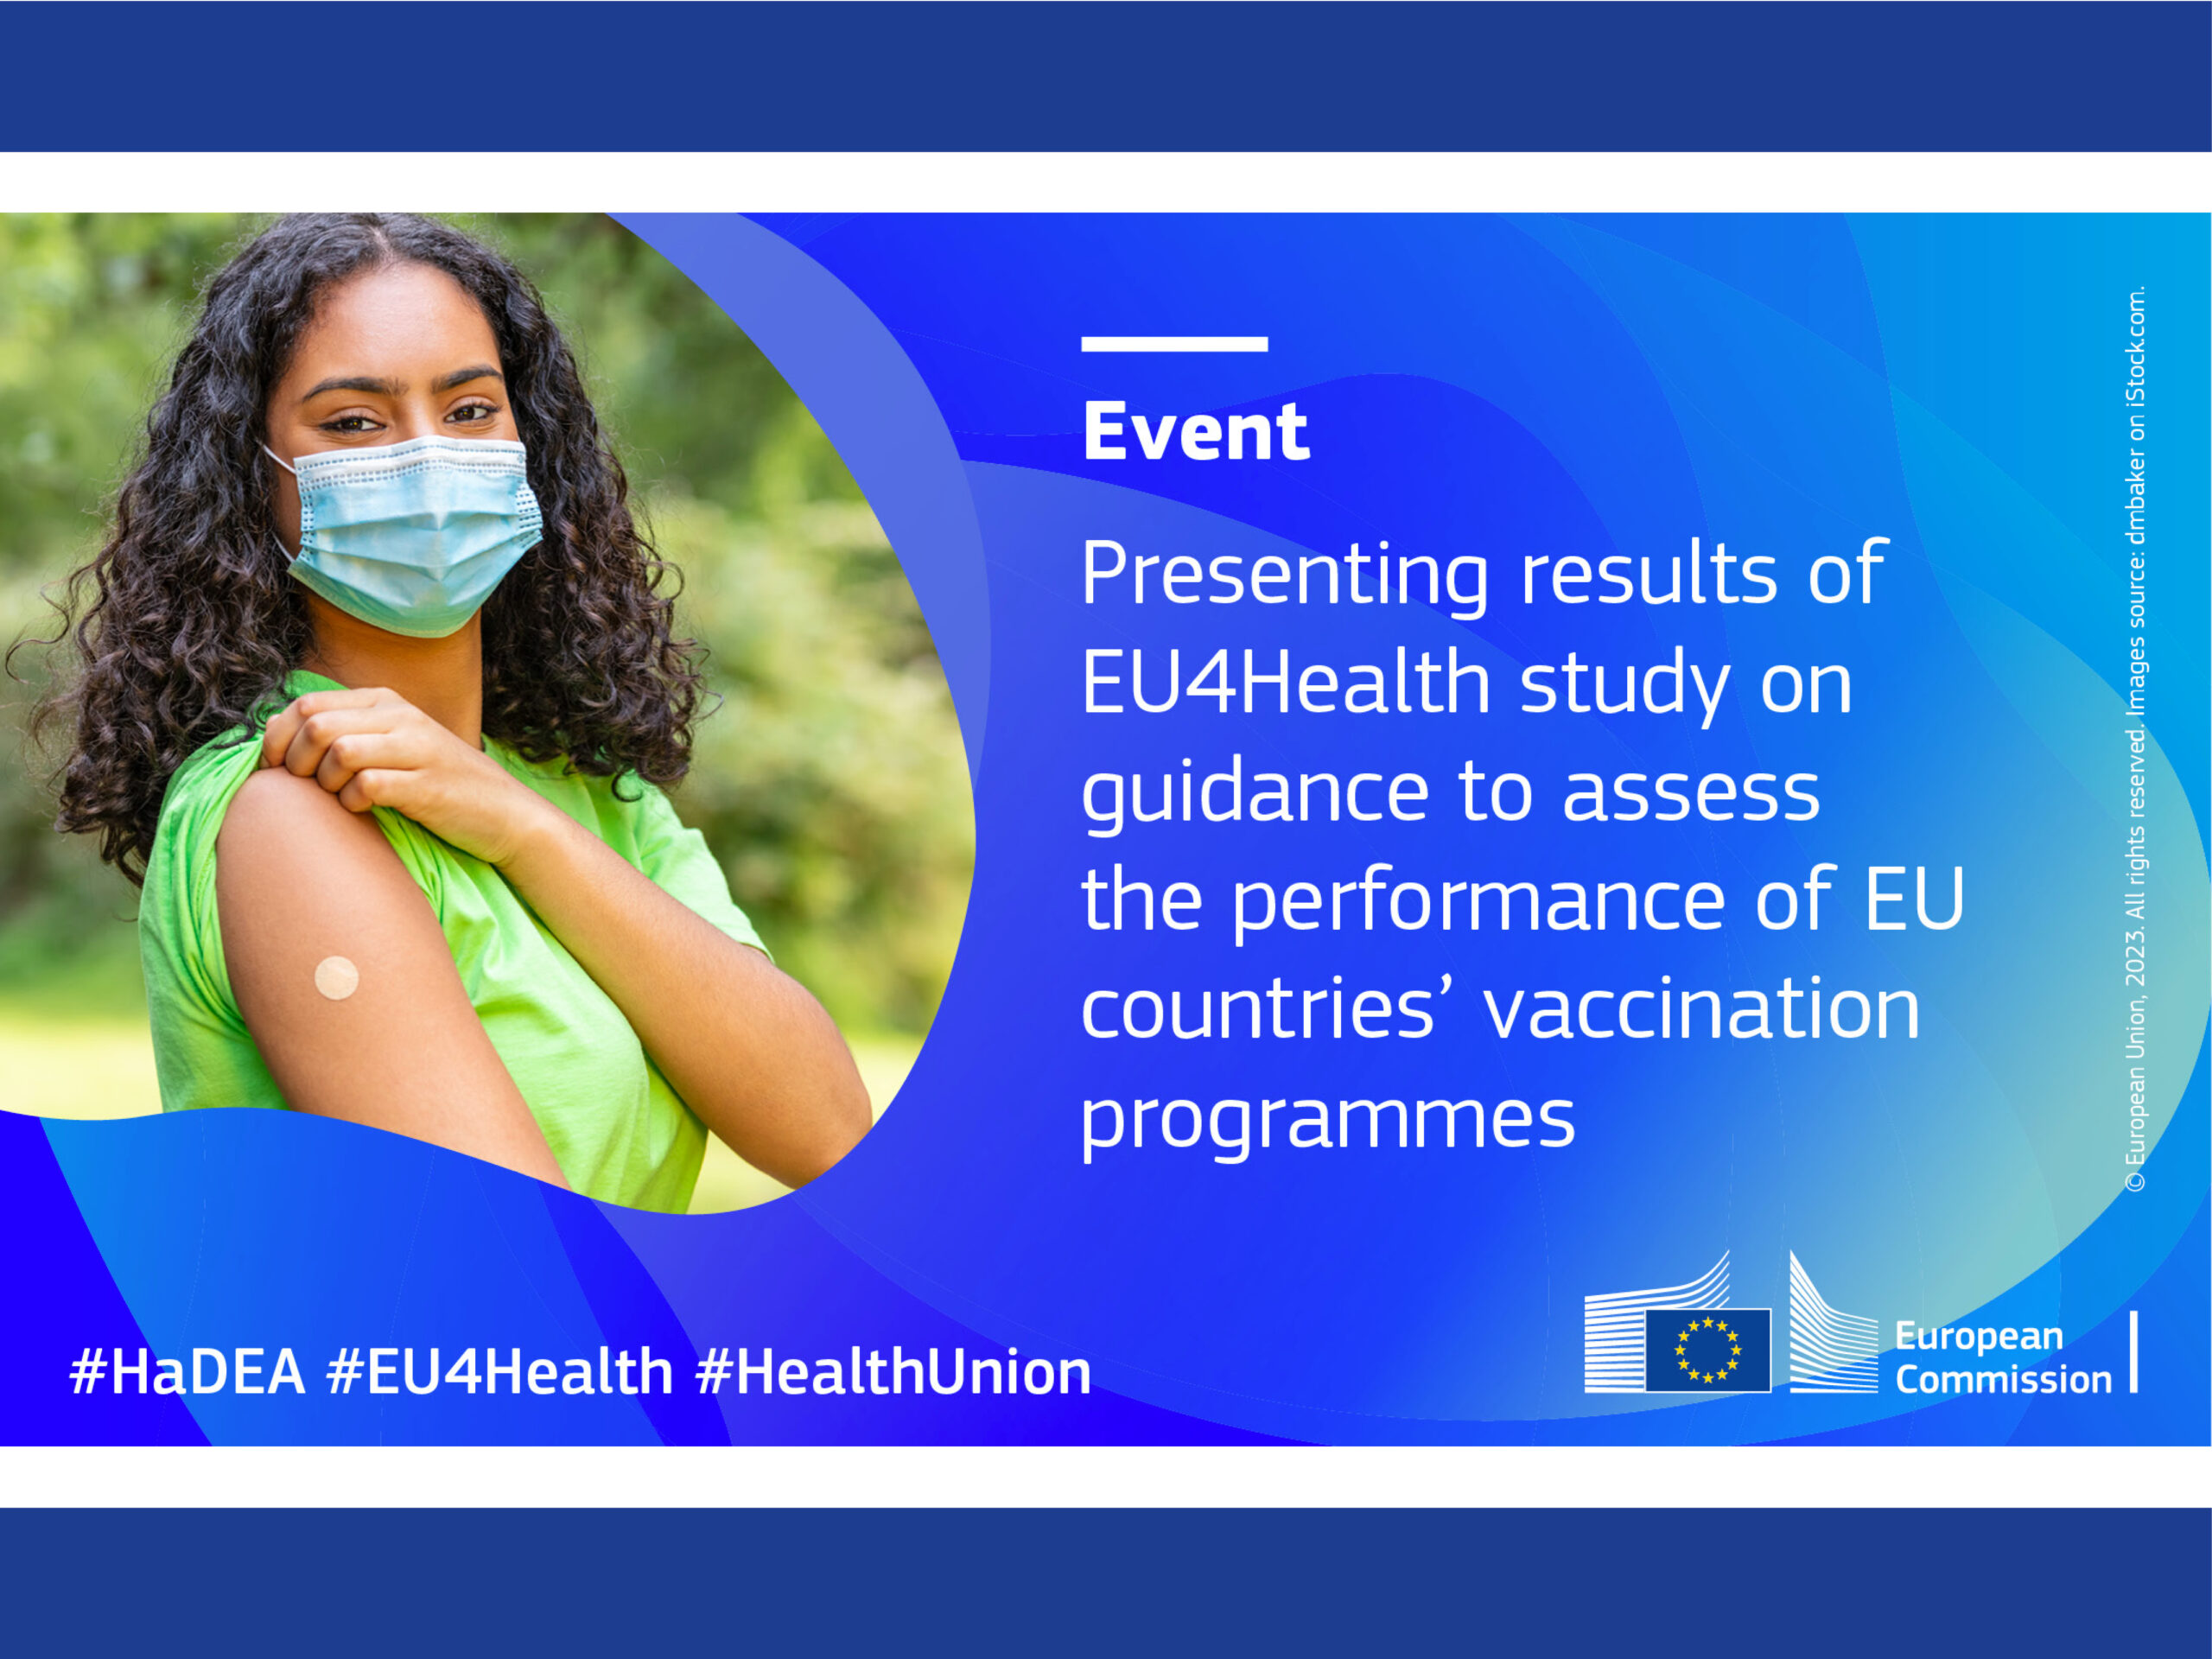 EU4Health: presentazione dei risultati sui programmi di vaccinazione dei paesi UE